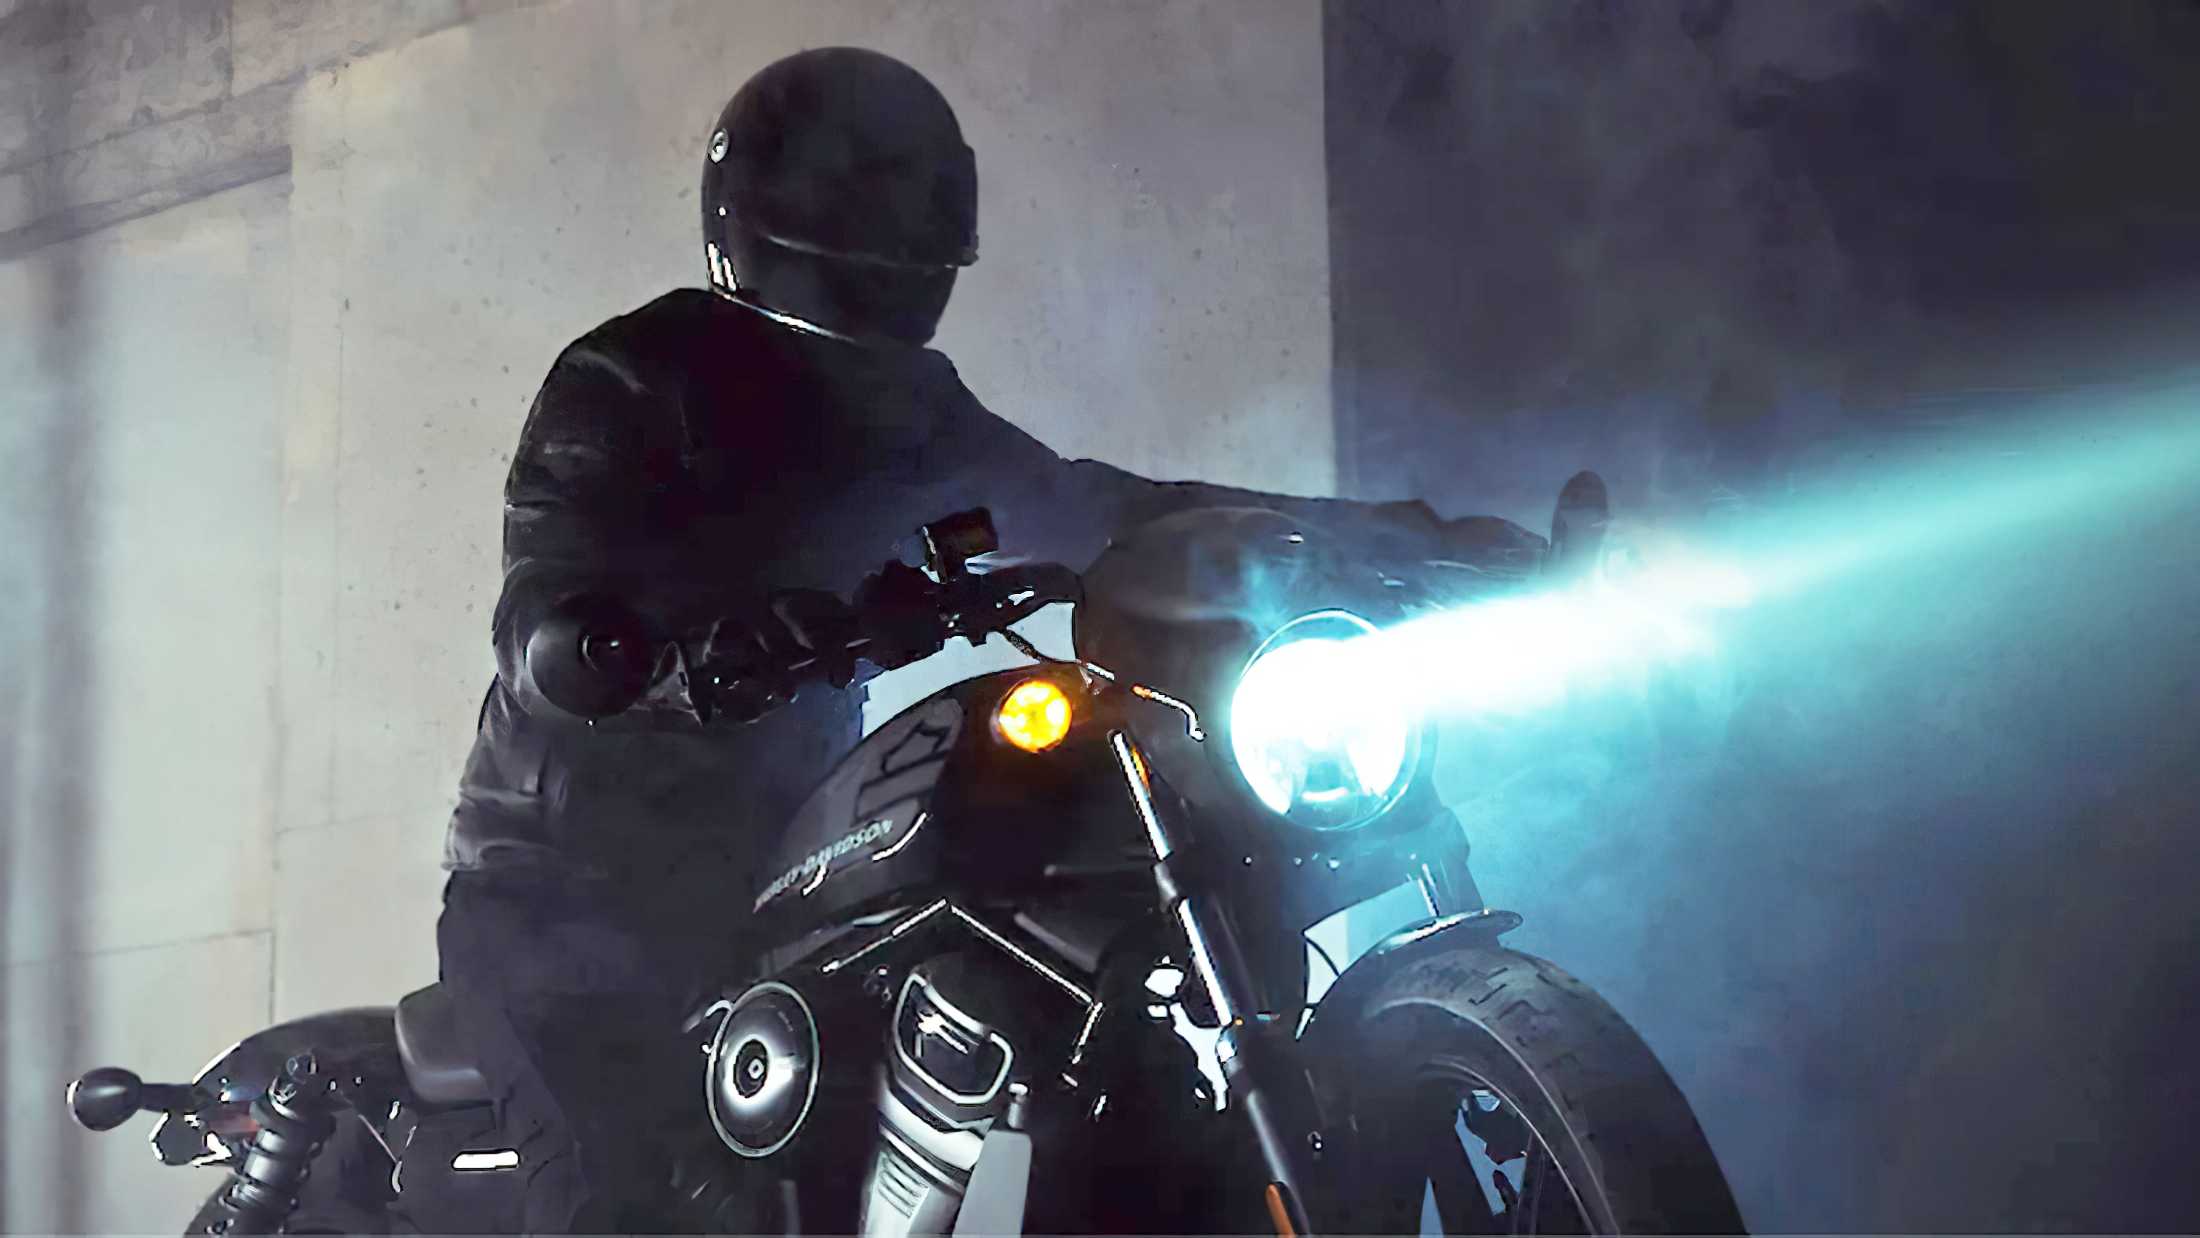 Vorstellung von neuer Harley Sportster am 12. April 2022
- auch in der MOTORRAD NACHRICHTEN APP